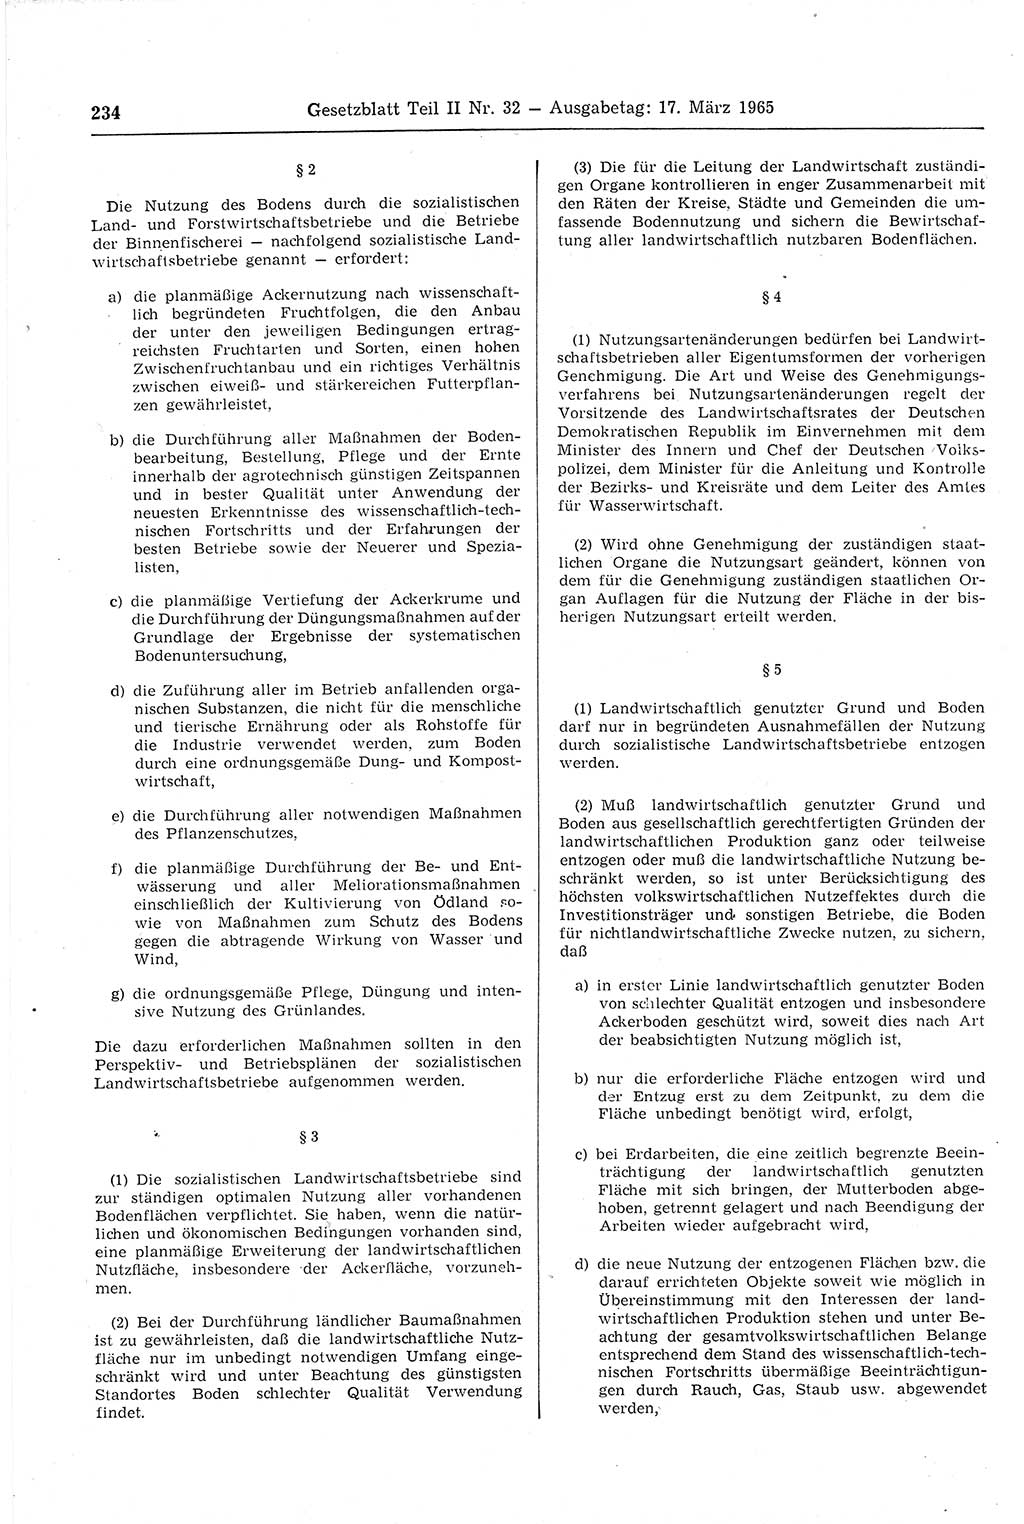 Gesetzblatt (GBl.) der Deutschen Demokratischen Republik (DDR) Teil ⅠⅠ 1965, Seite 234 (GBl. DDR ⅠⅠ 1965, S. 234)